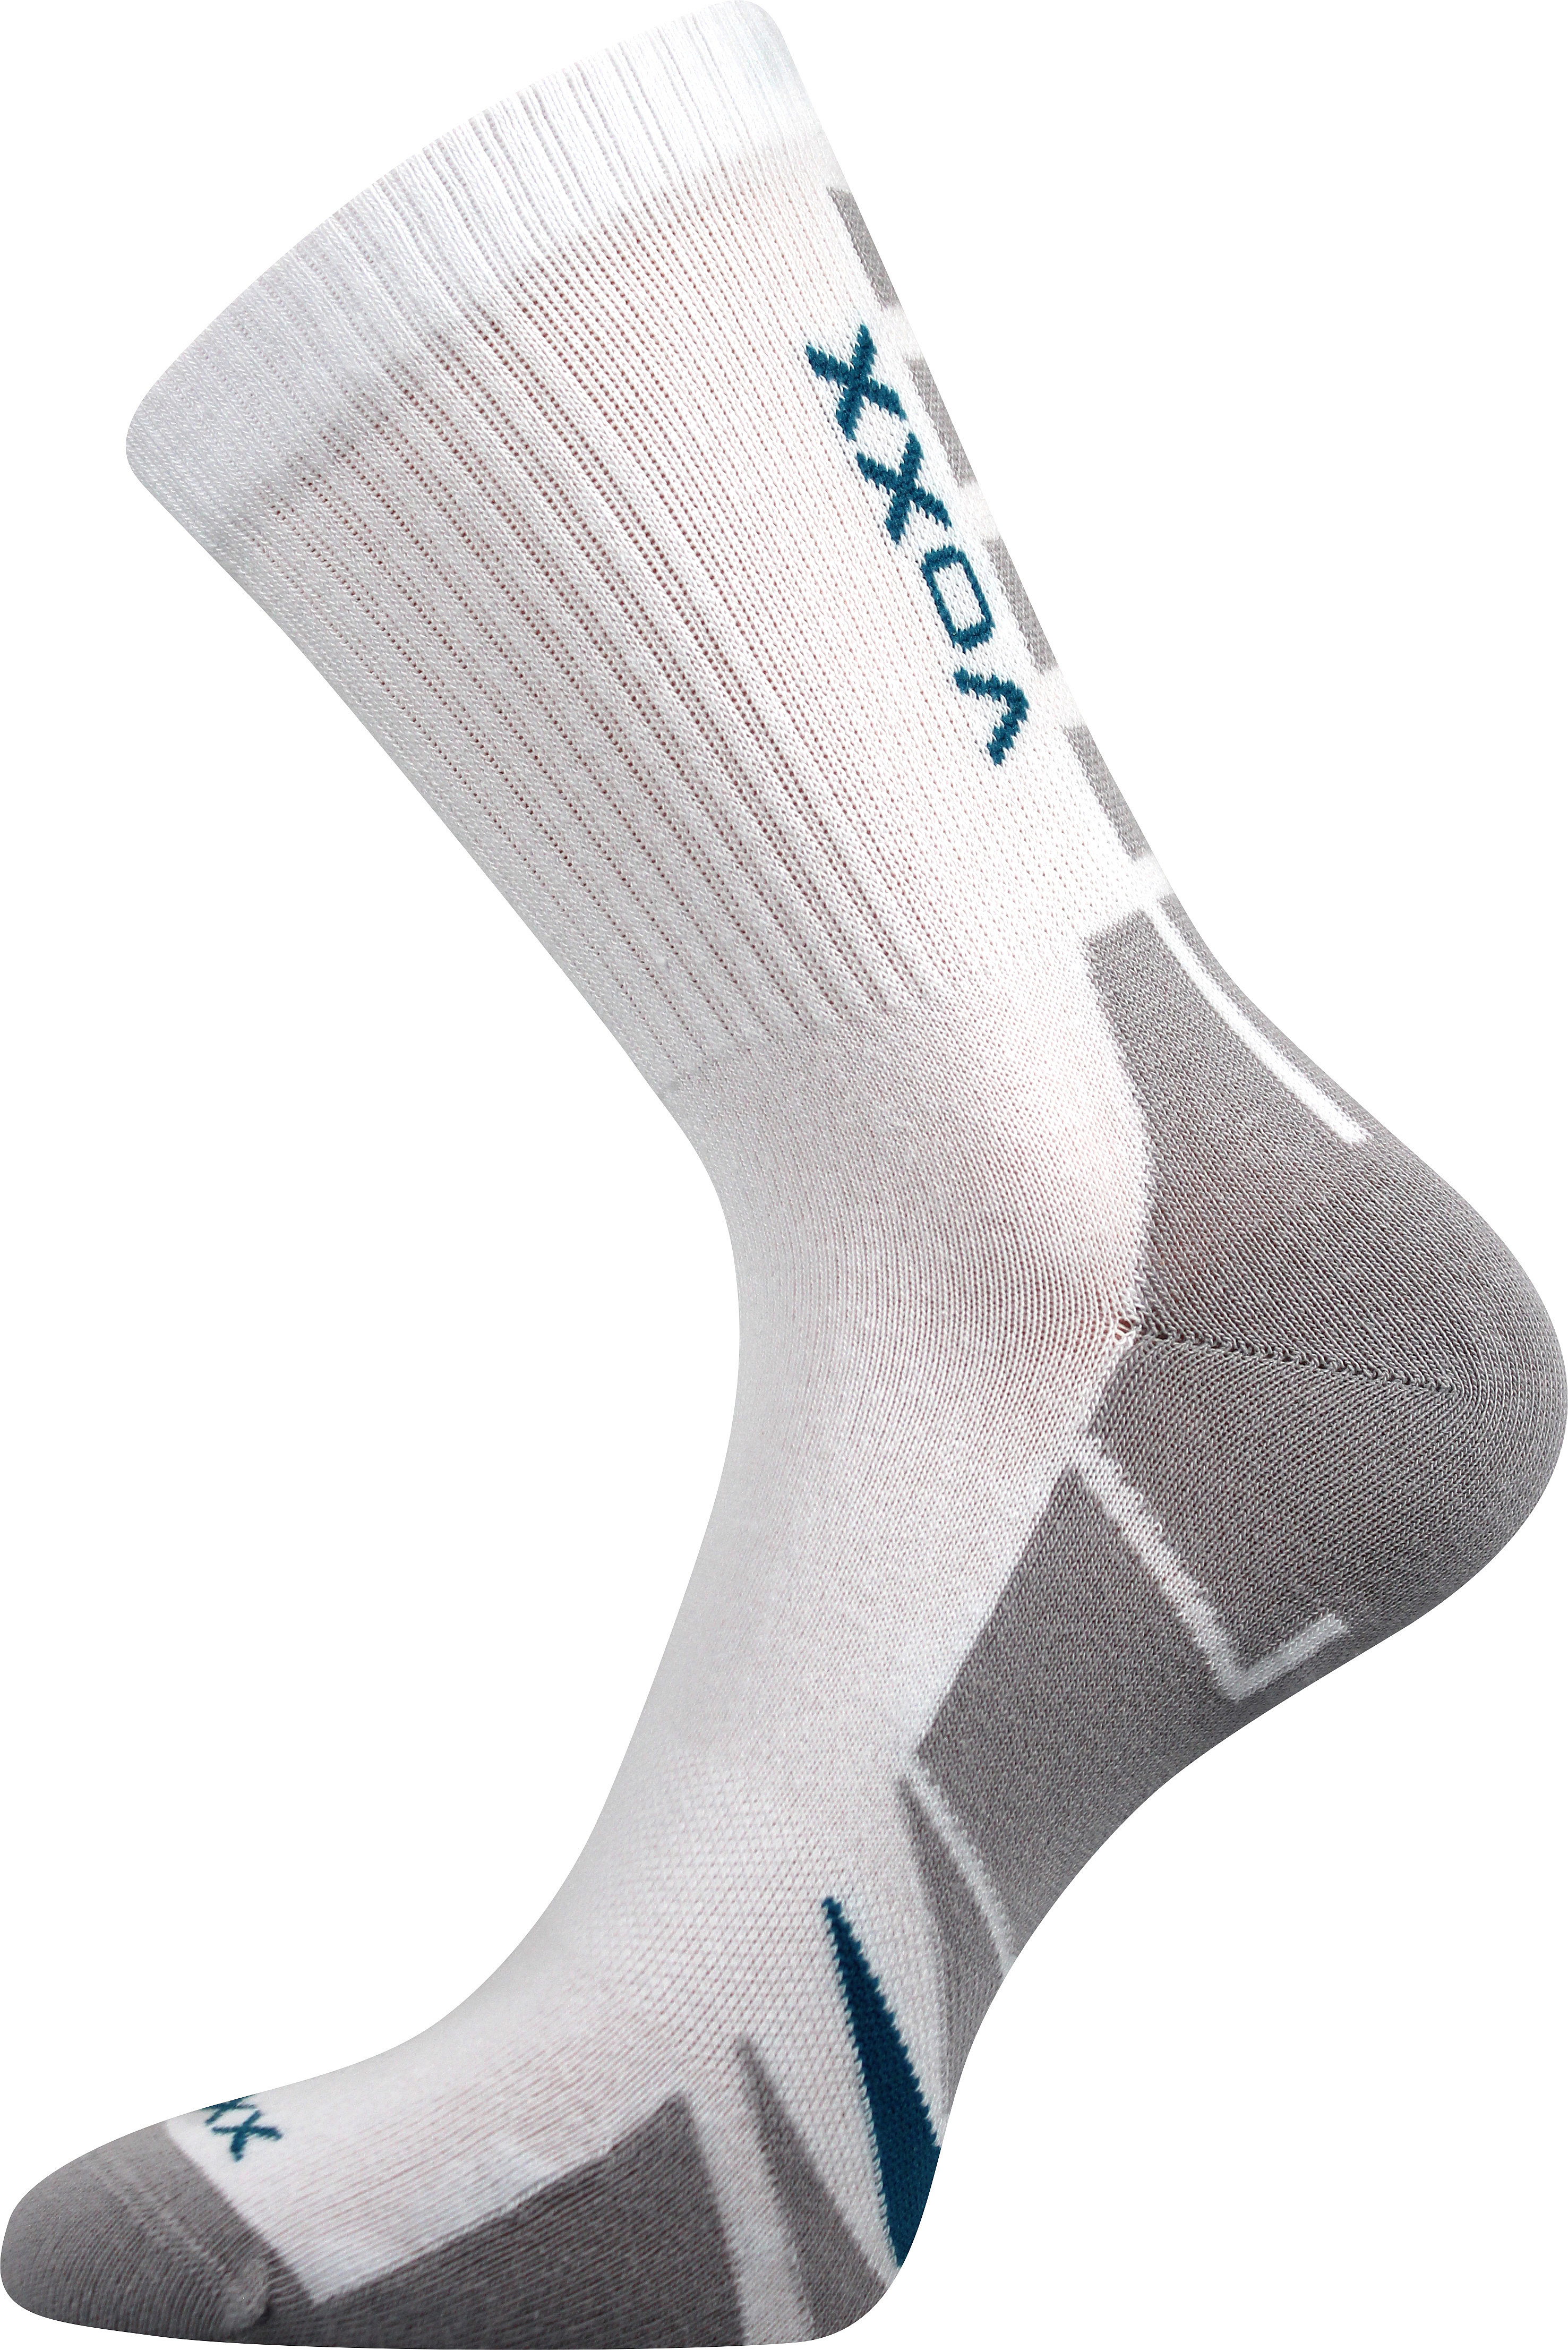 Ponožky sportovní Voxx Hermes - bílé-šedé, 39-42